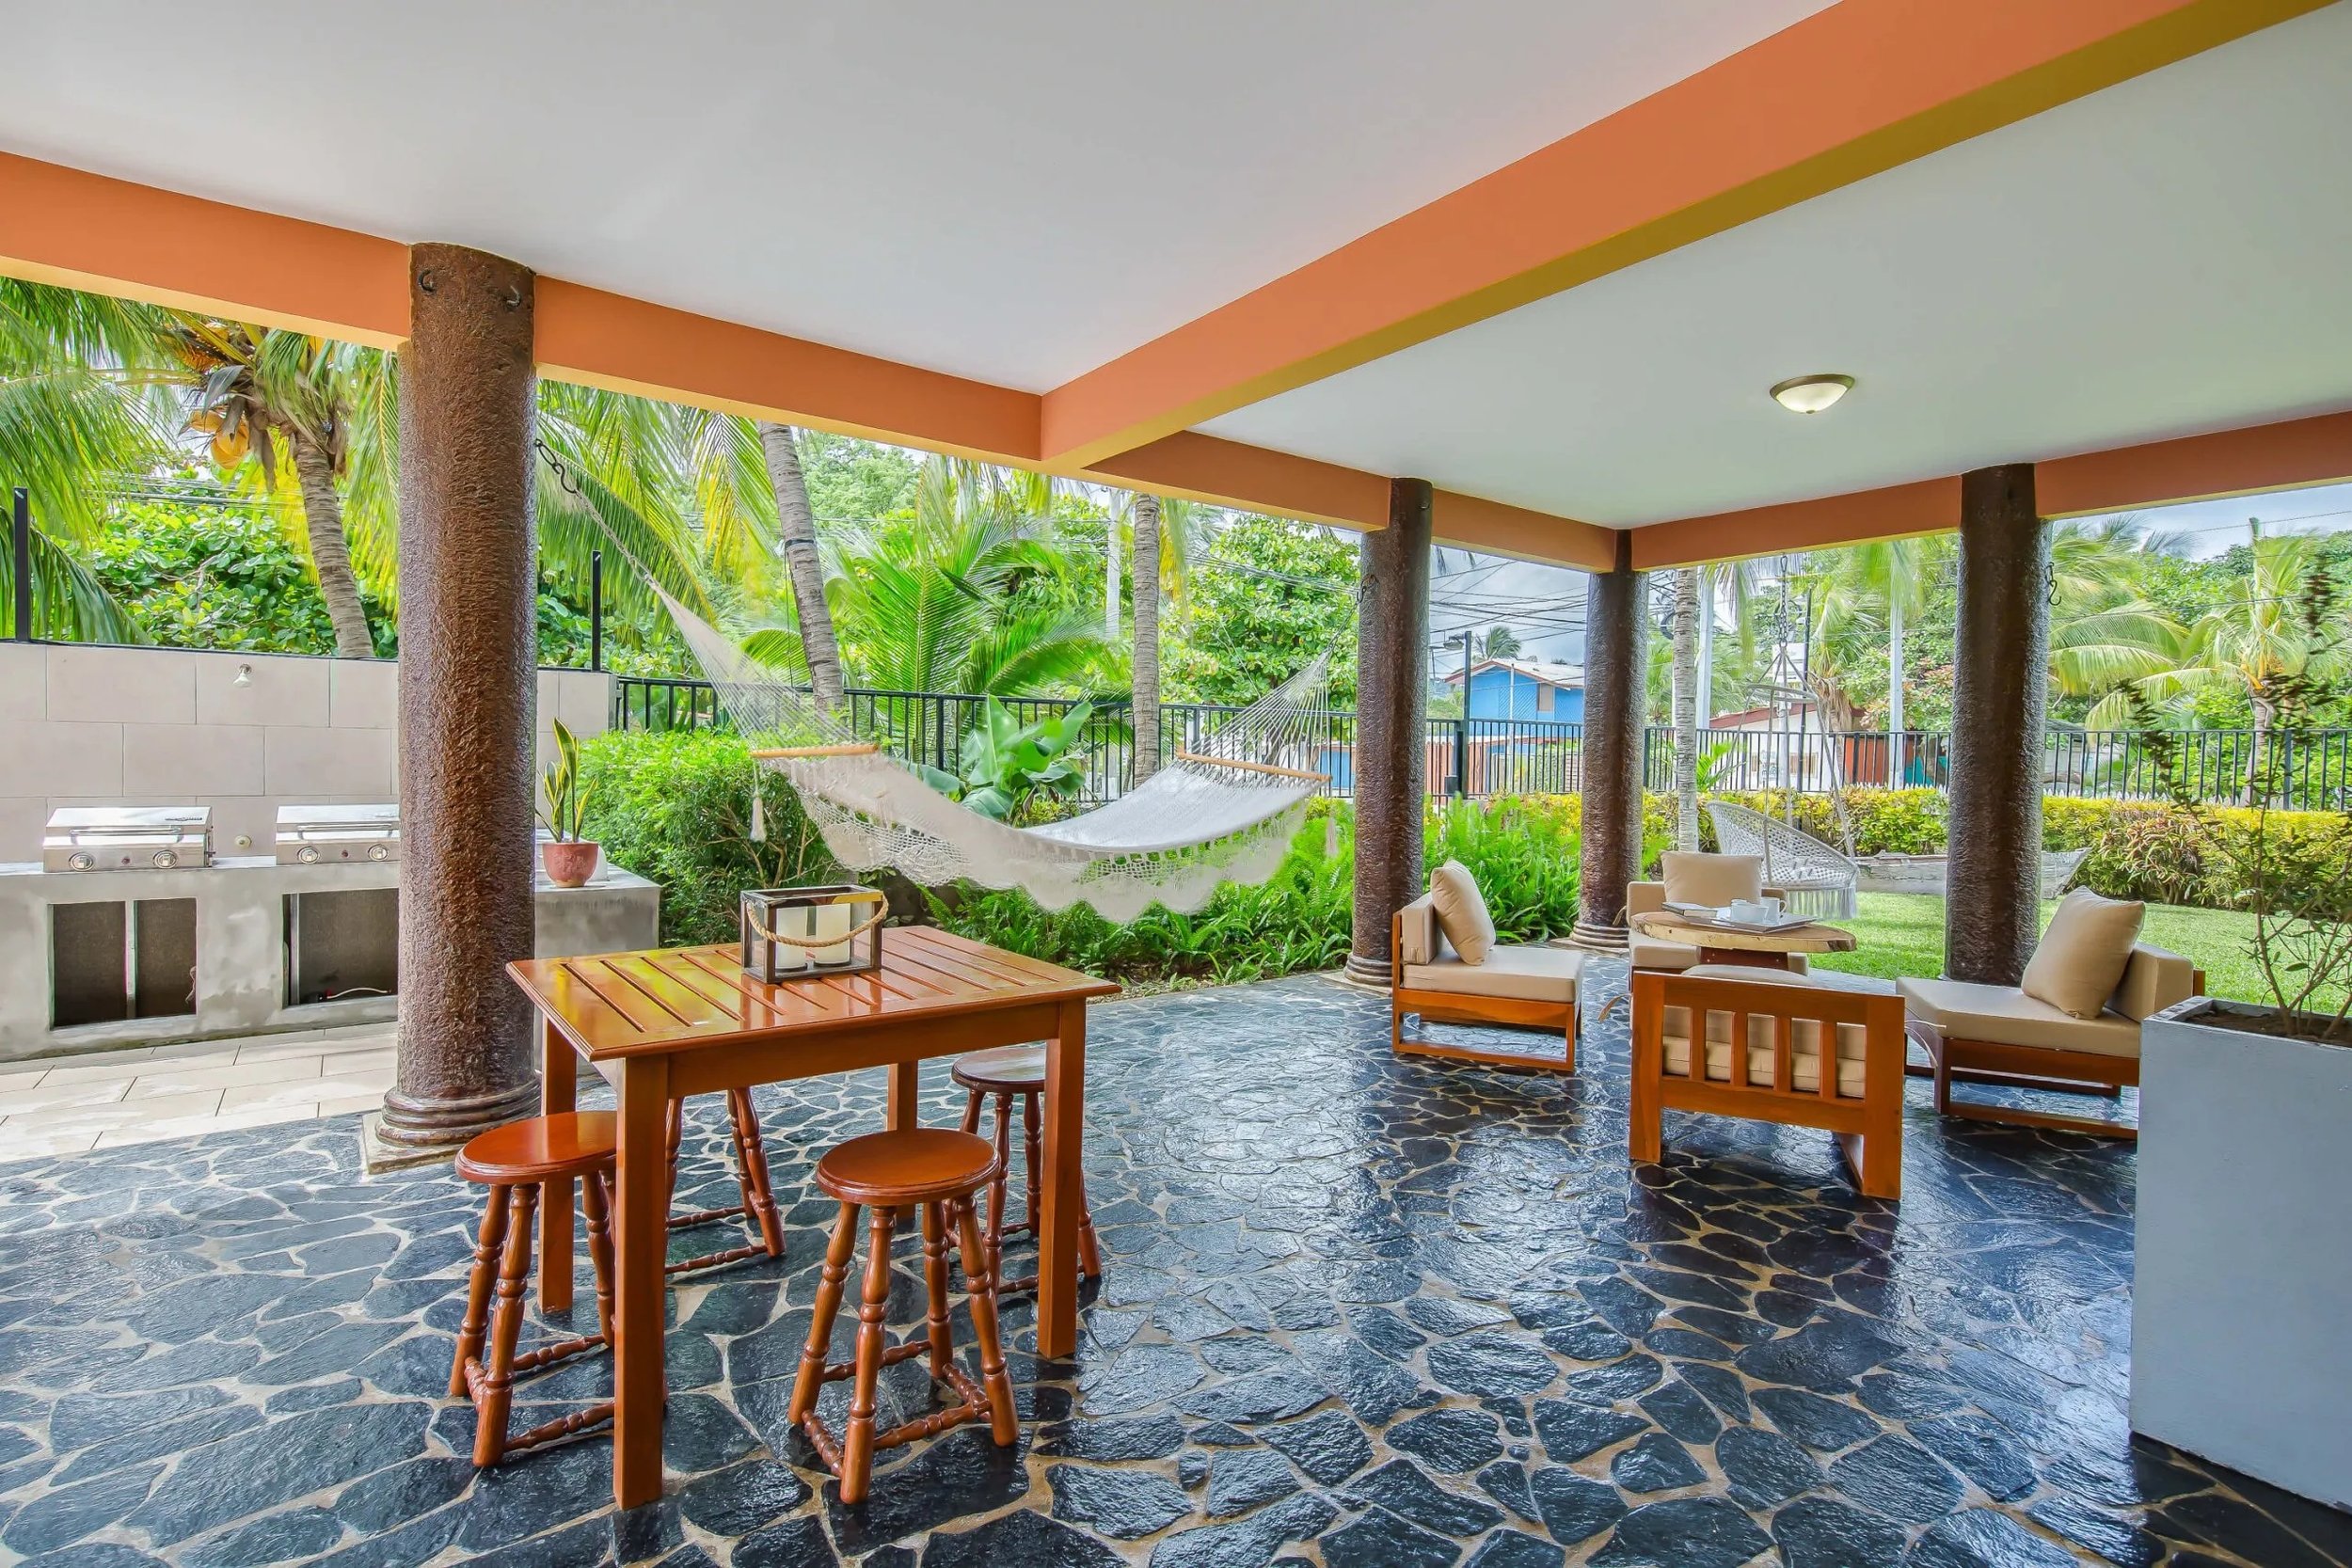 Property Real Estate Commercial Hotel For Sale in San Juan Del Sur, Nicaragua (14).jpg